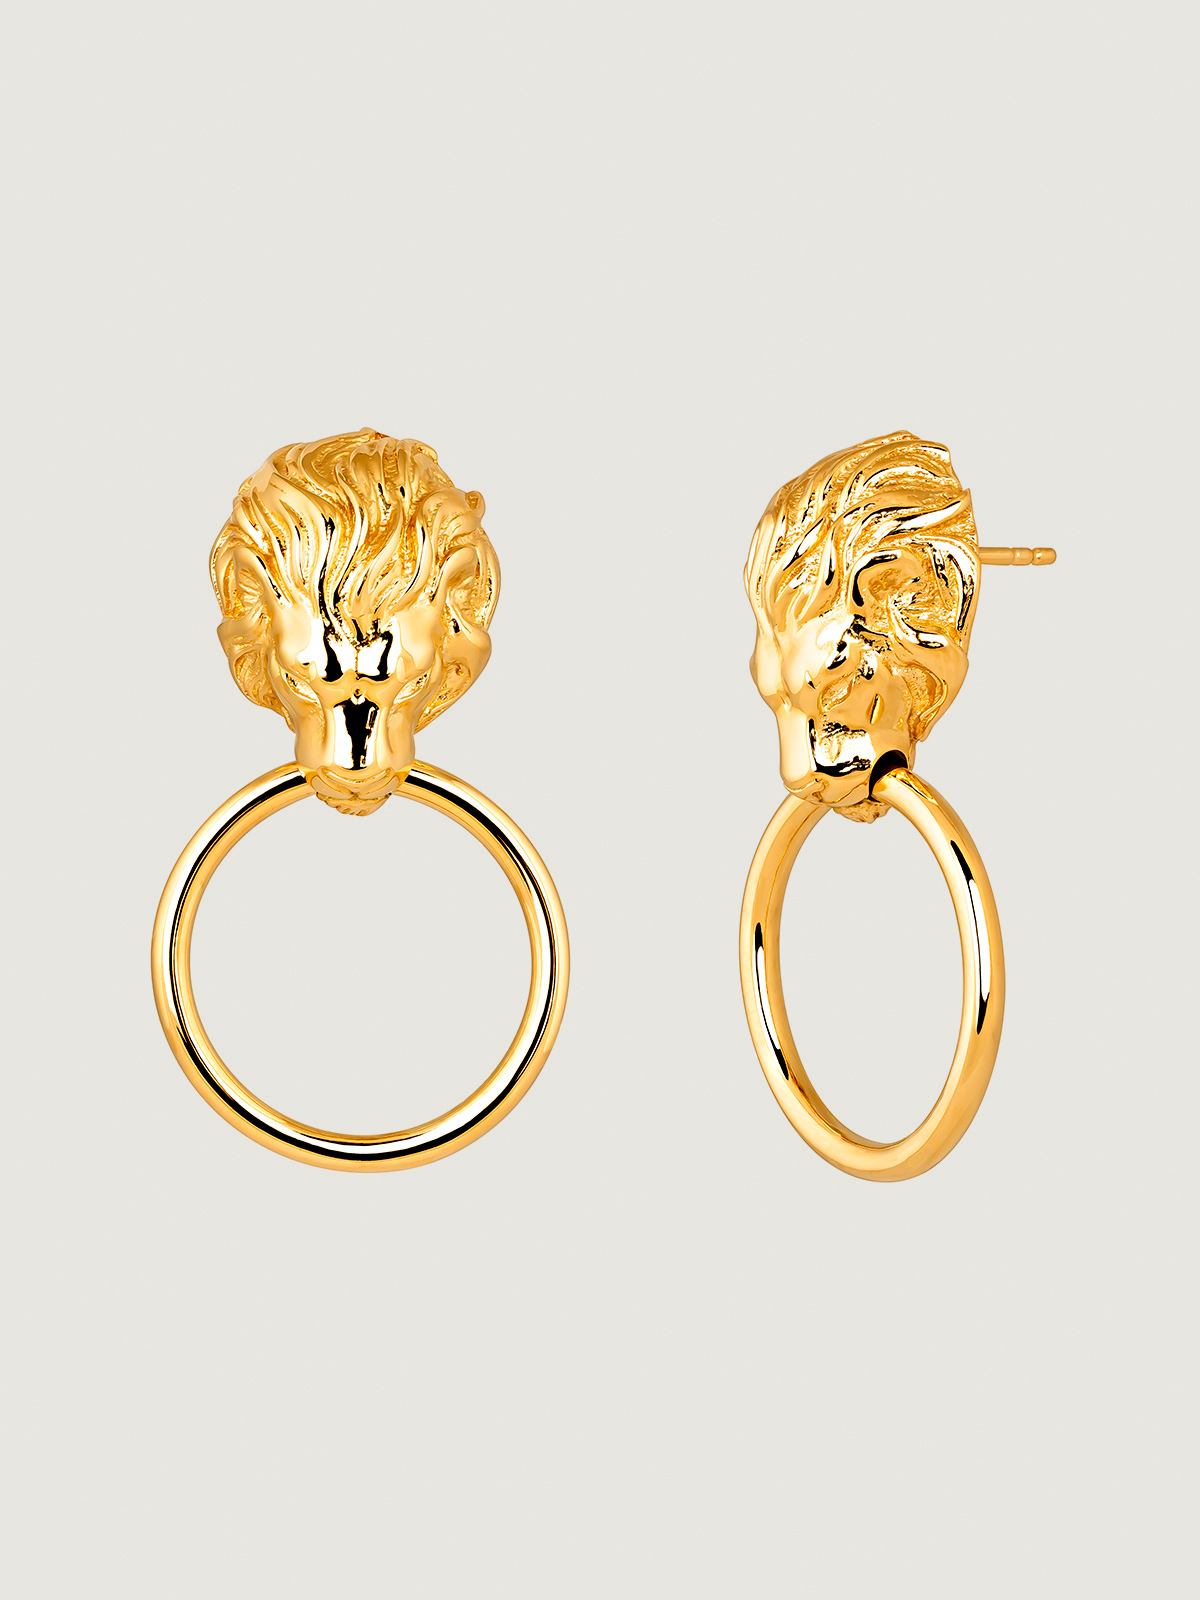 Pendientes de plata 925 bañada en oro amarillo de 18K con aro y cabeza de león